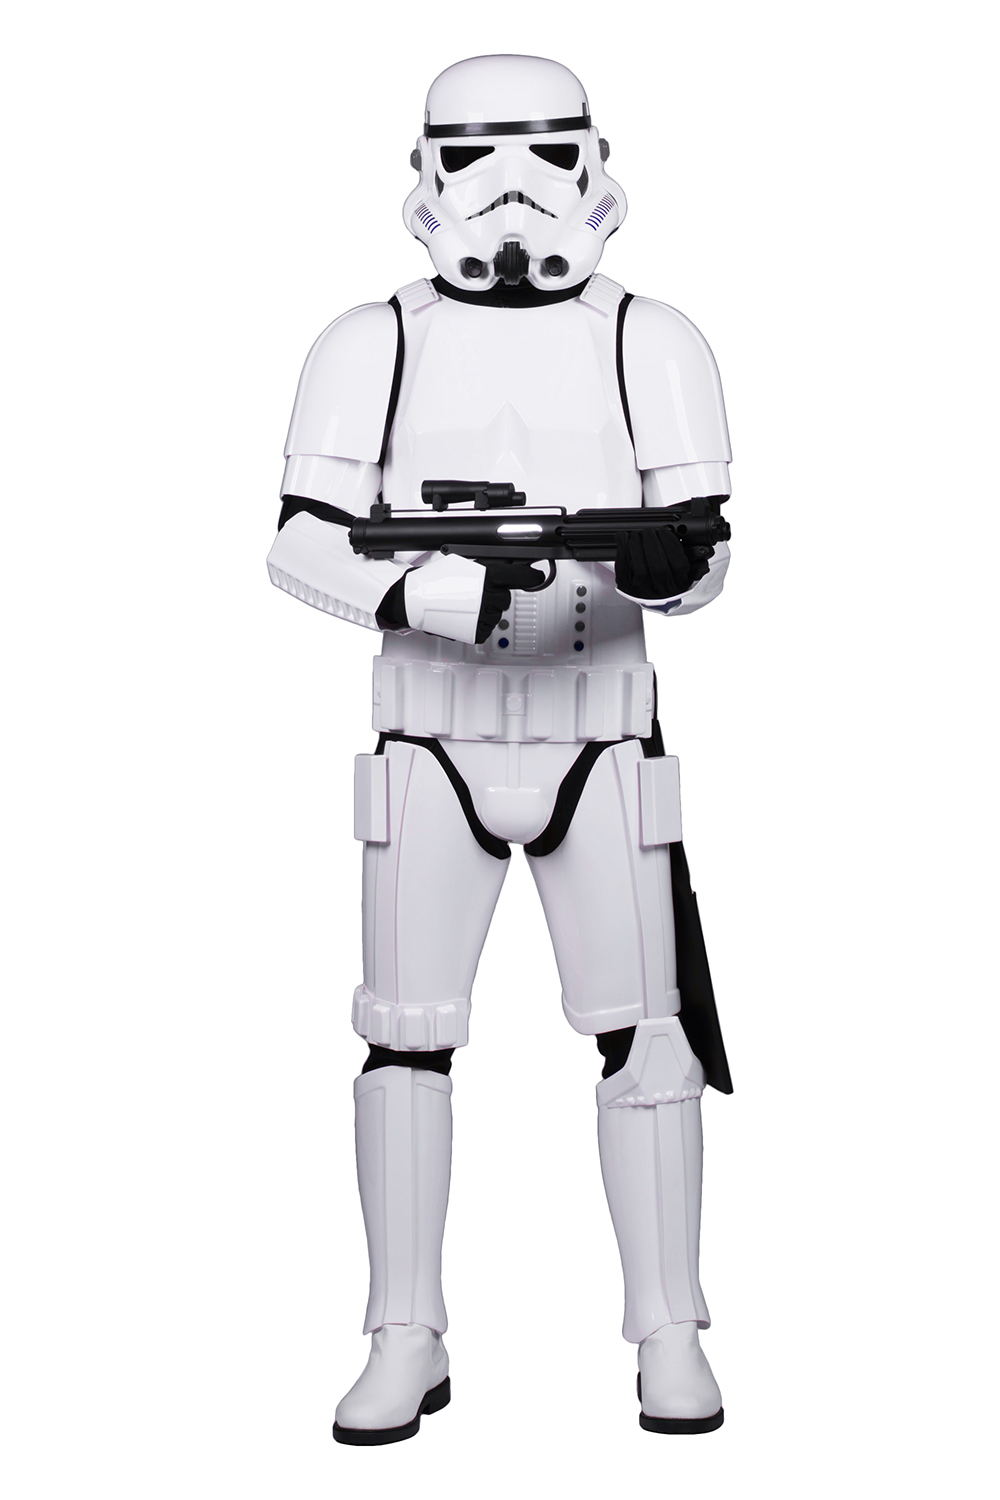 Gummihandschuhe schwarz für Star Wars Stormtrooper Kostüm Rüstung 